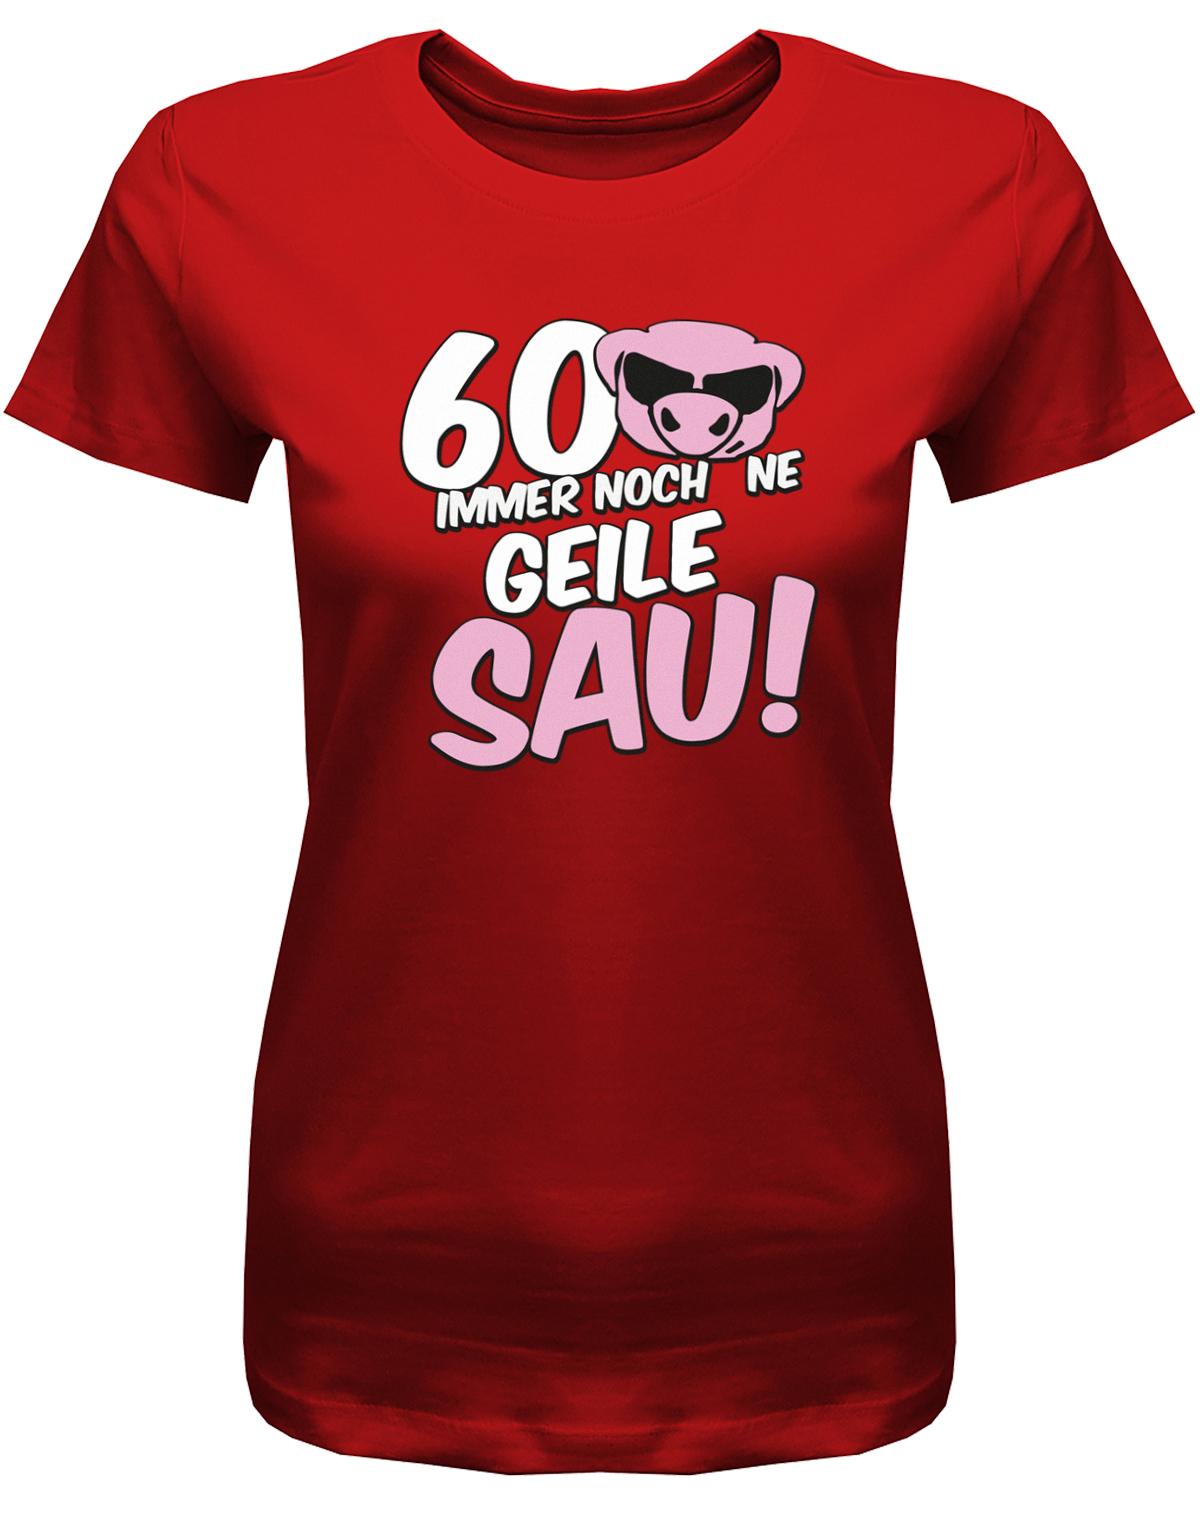 Lustiges T-Shirt zum 60 Geburtstag für die Frau Bedruckt mit 60 Immer noch 'ne geile Sau! Sau mit Sonnenbrille Rot